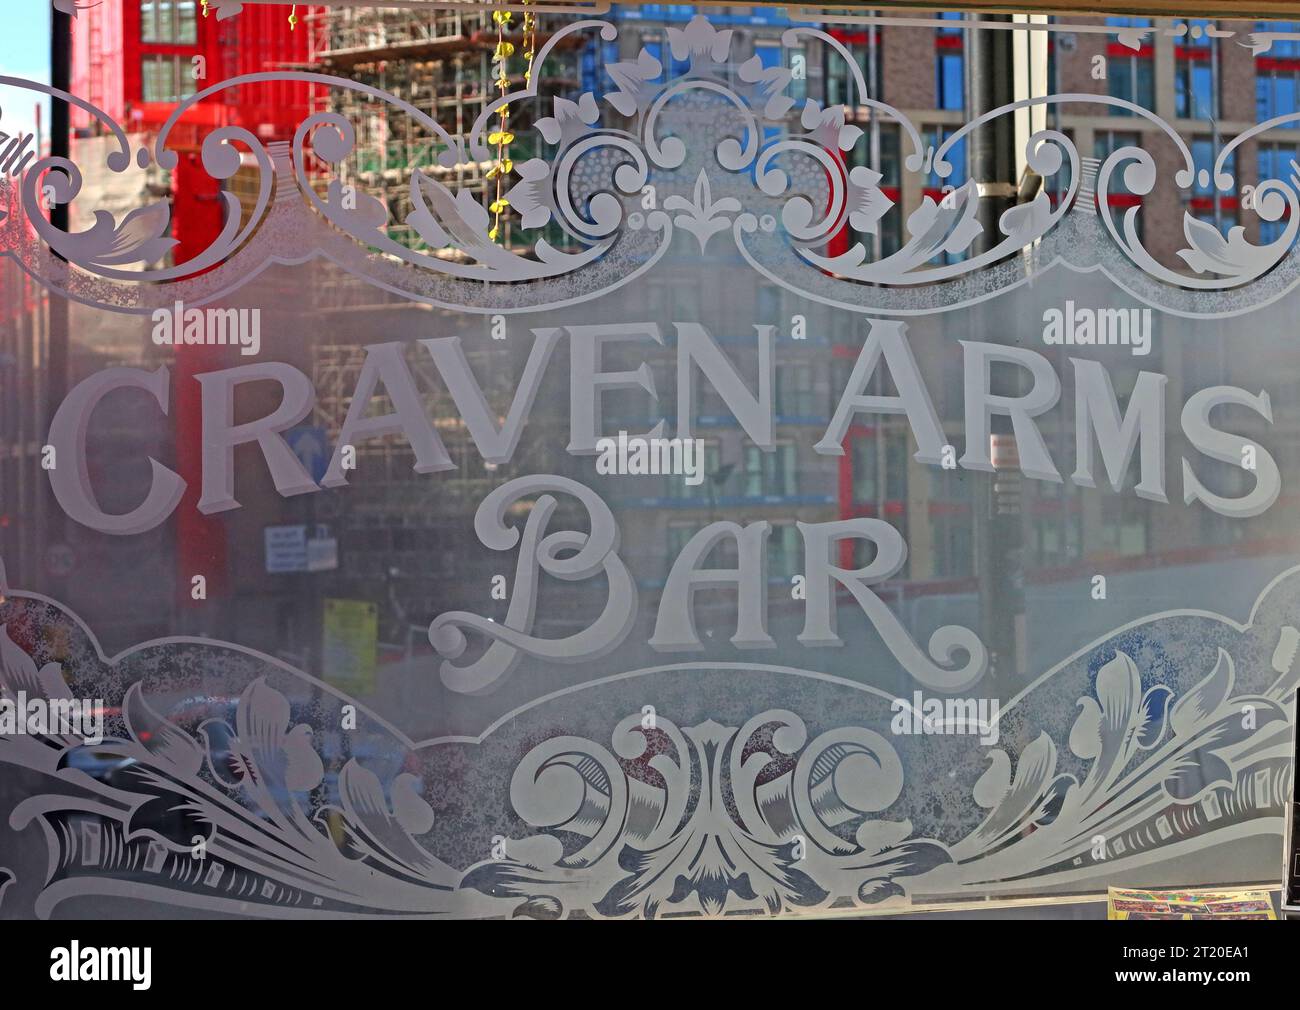 Vitrail de bar traditionnel Real ALE pub, The Craven Arms, 47 Upper Gough St, Birmingham, West Midlands, Angleterre, Royaume-Uni, B1 1JL Banque D'Images